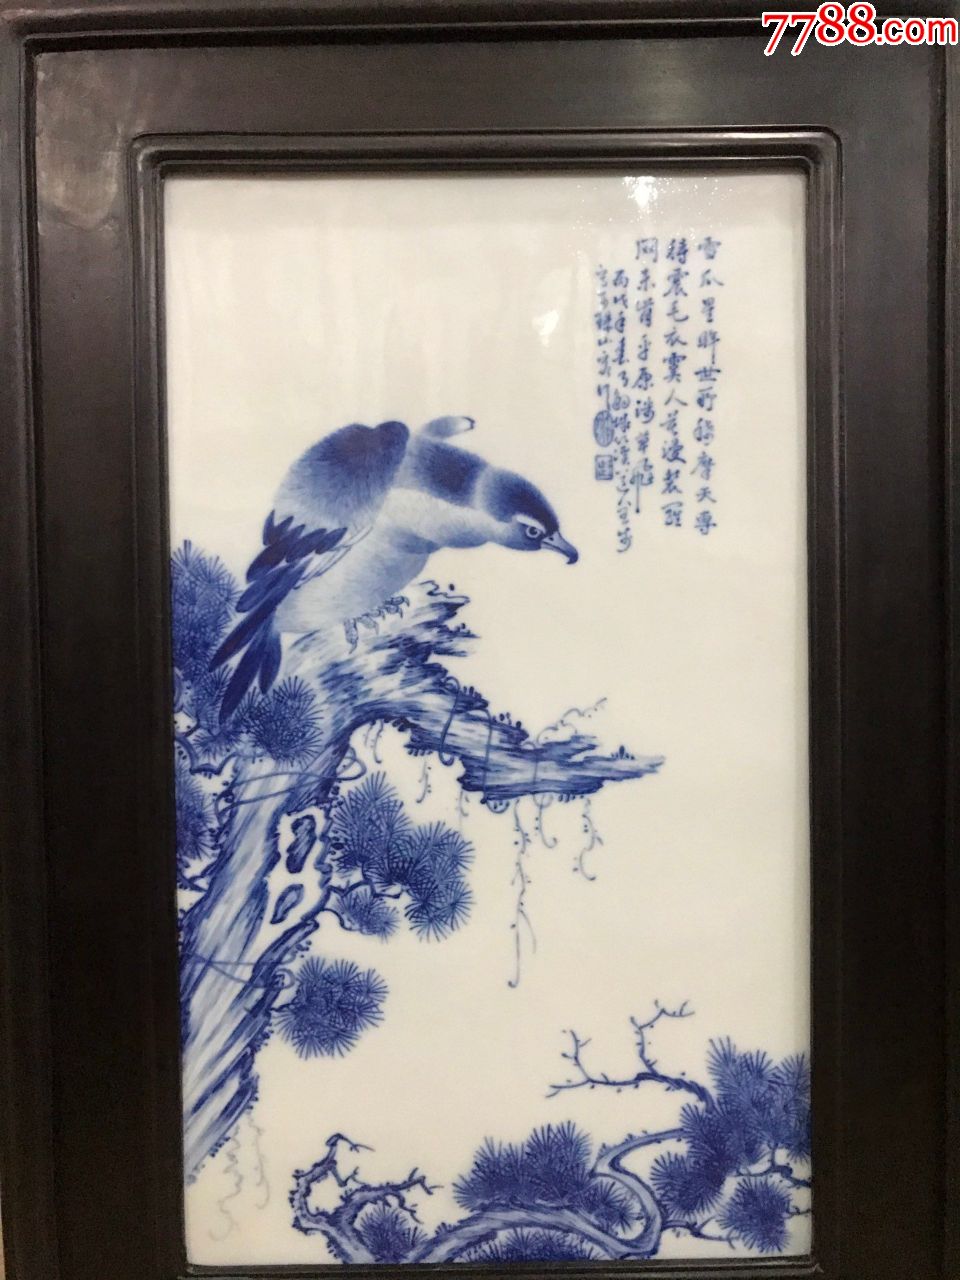 旧藏珠山八友"王步"雄鹰瓷板画